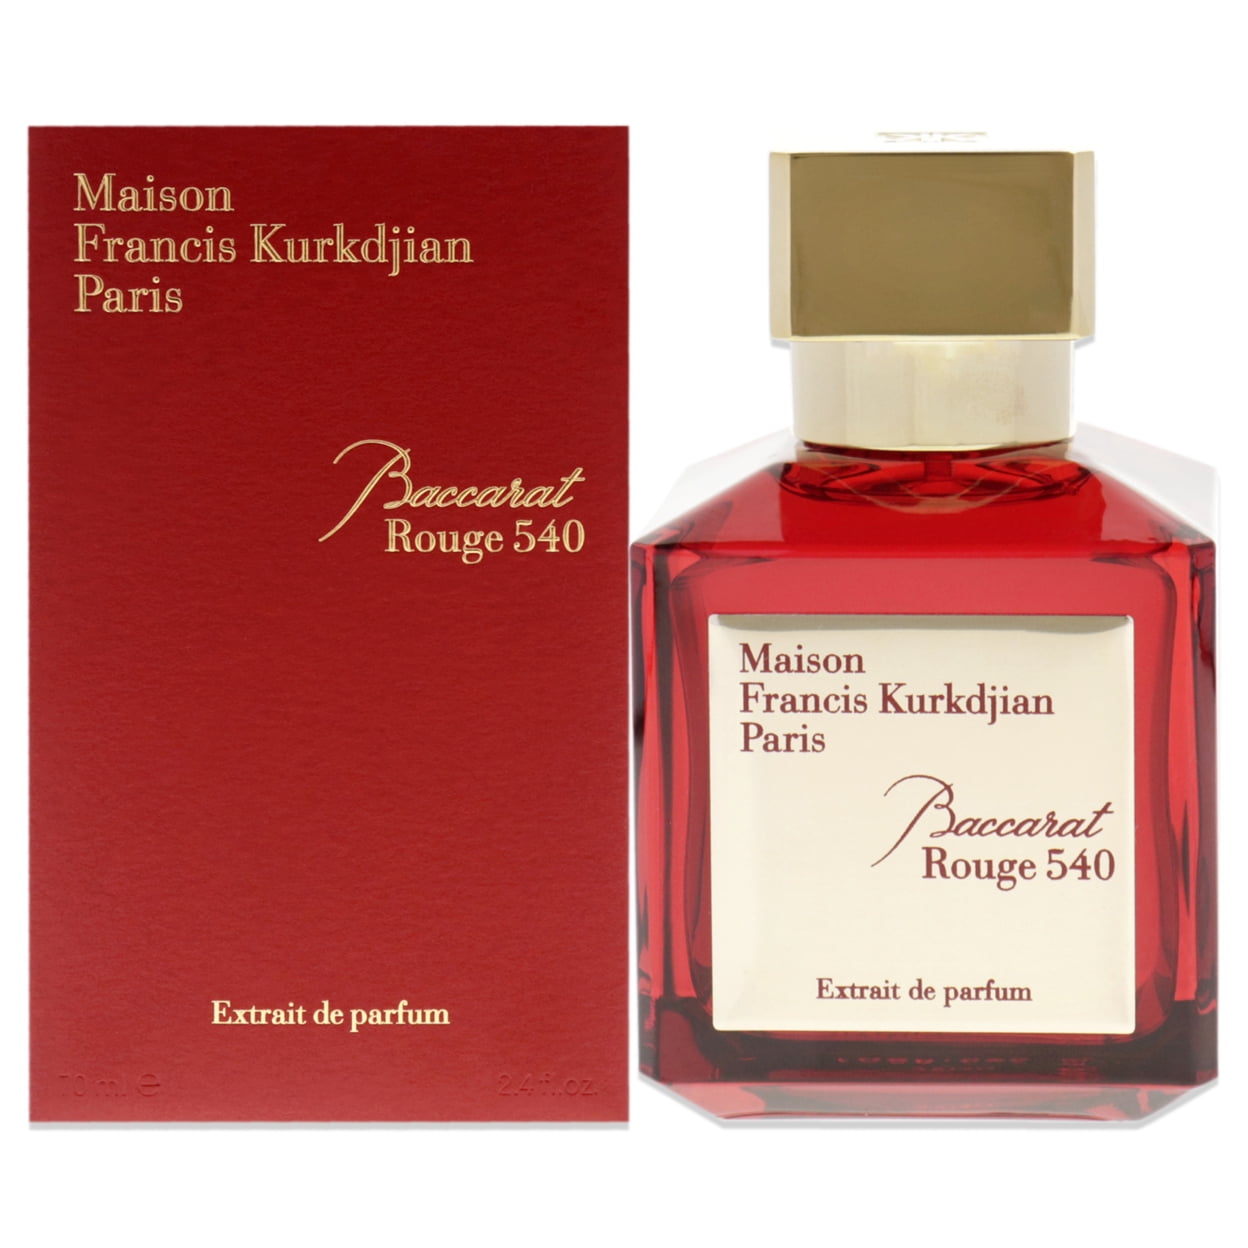 Maison Francis Kurkdjian Baccarat Rouge 540 Extrait De Parfum - 70 ml